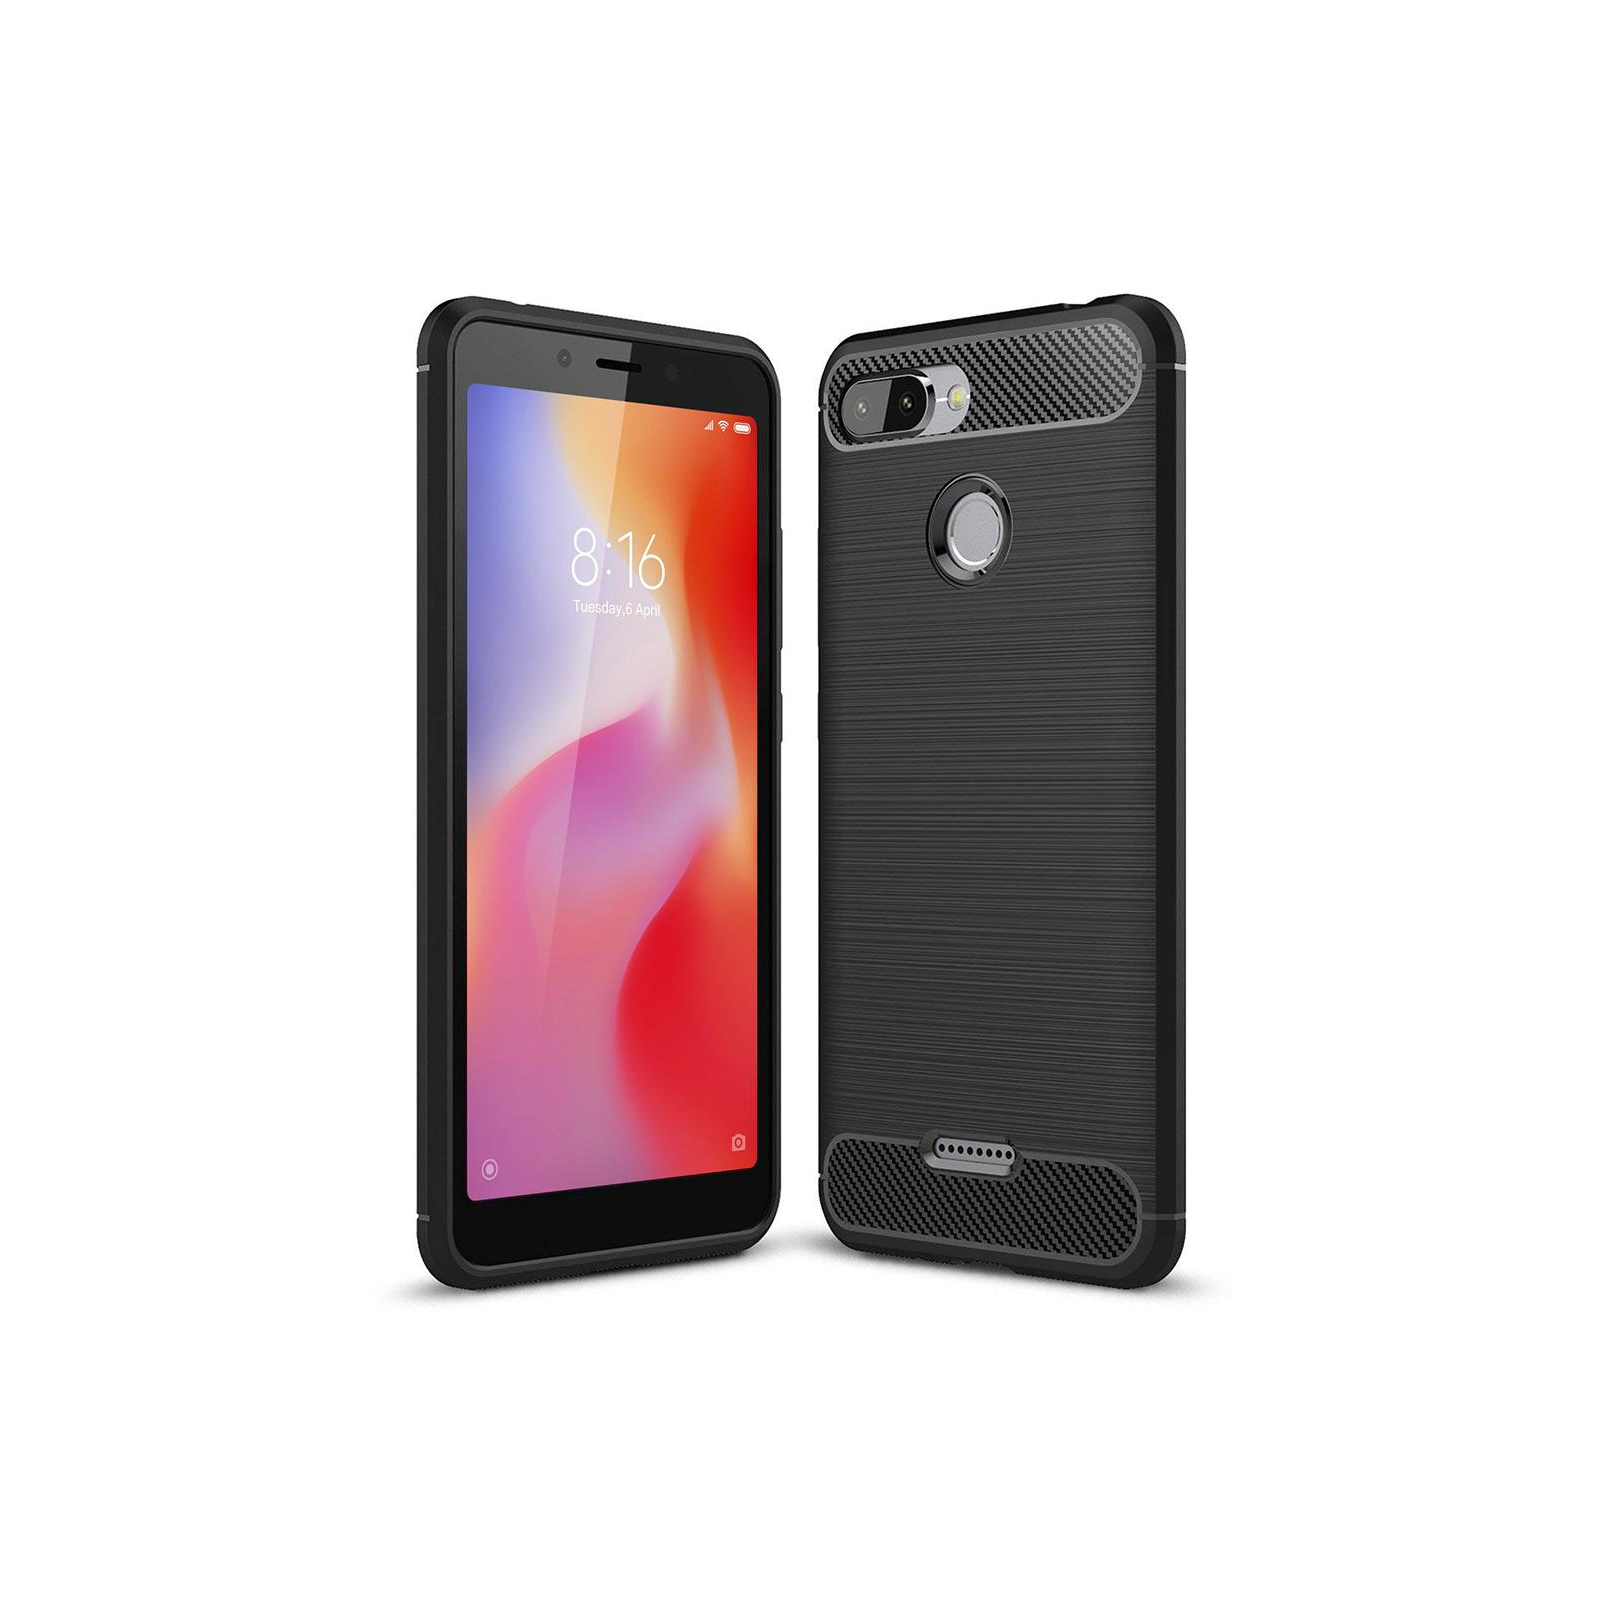 Чехол для мобильного телефона Laudtec для Xiaomi Redmi 6 Carbon Fiber (Black) (LT-XR6)